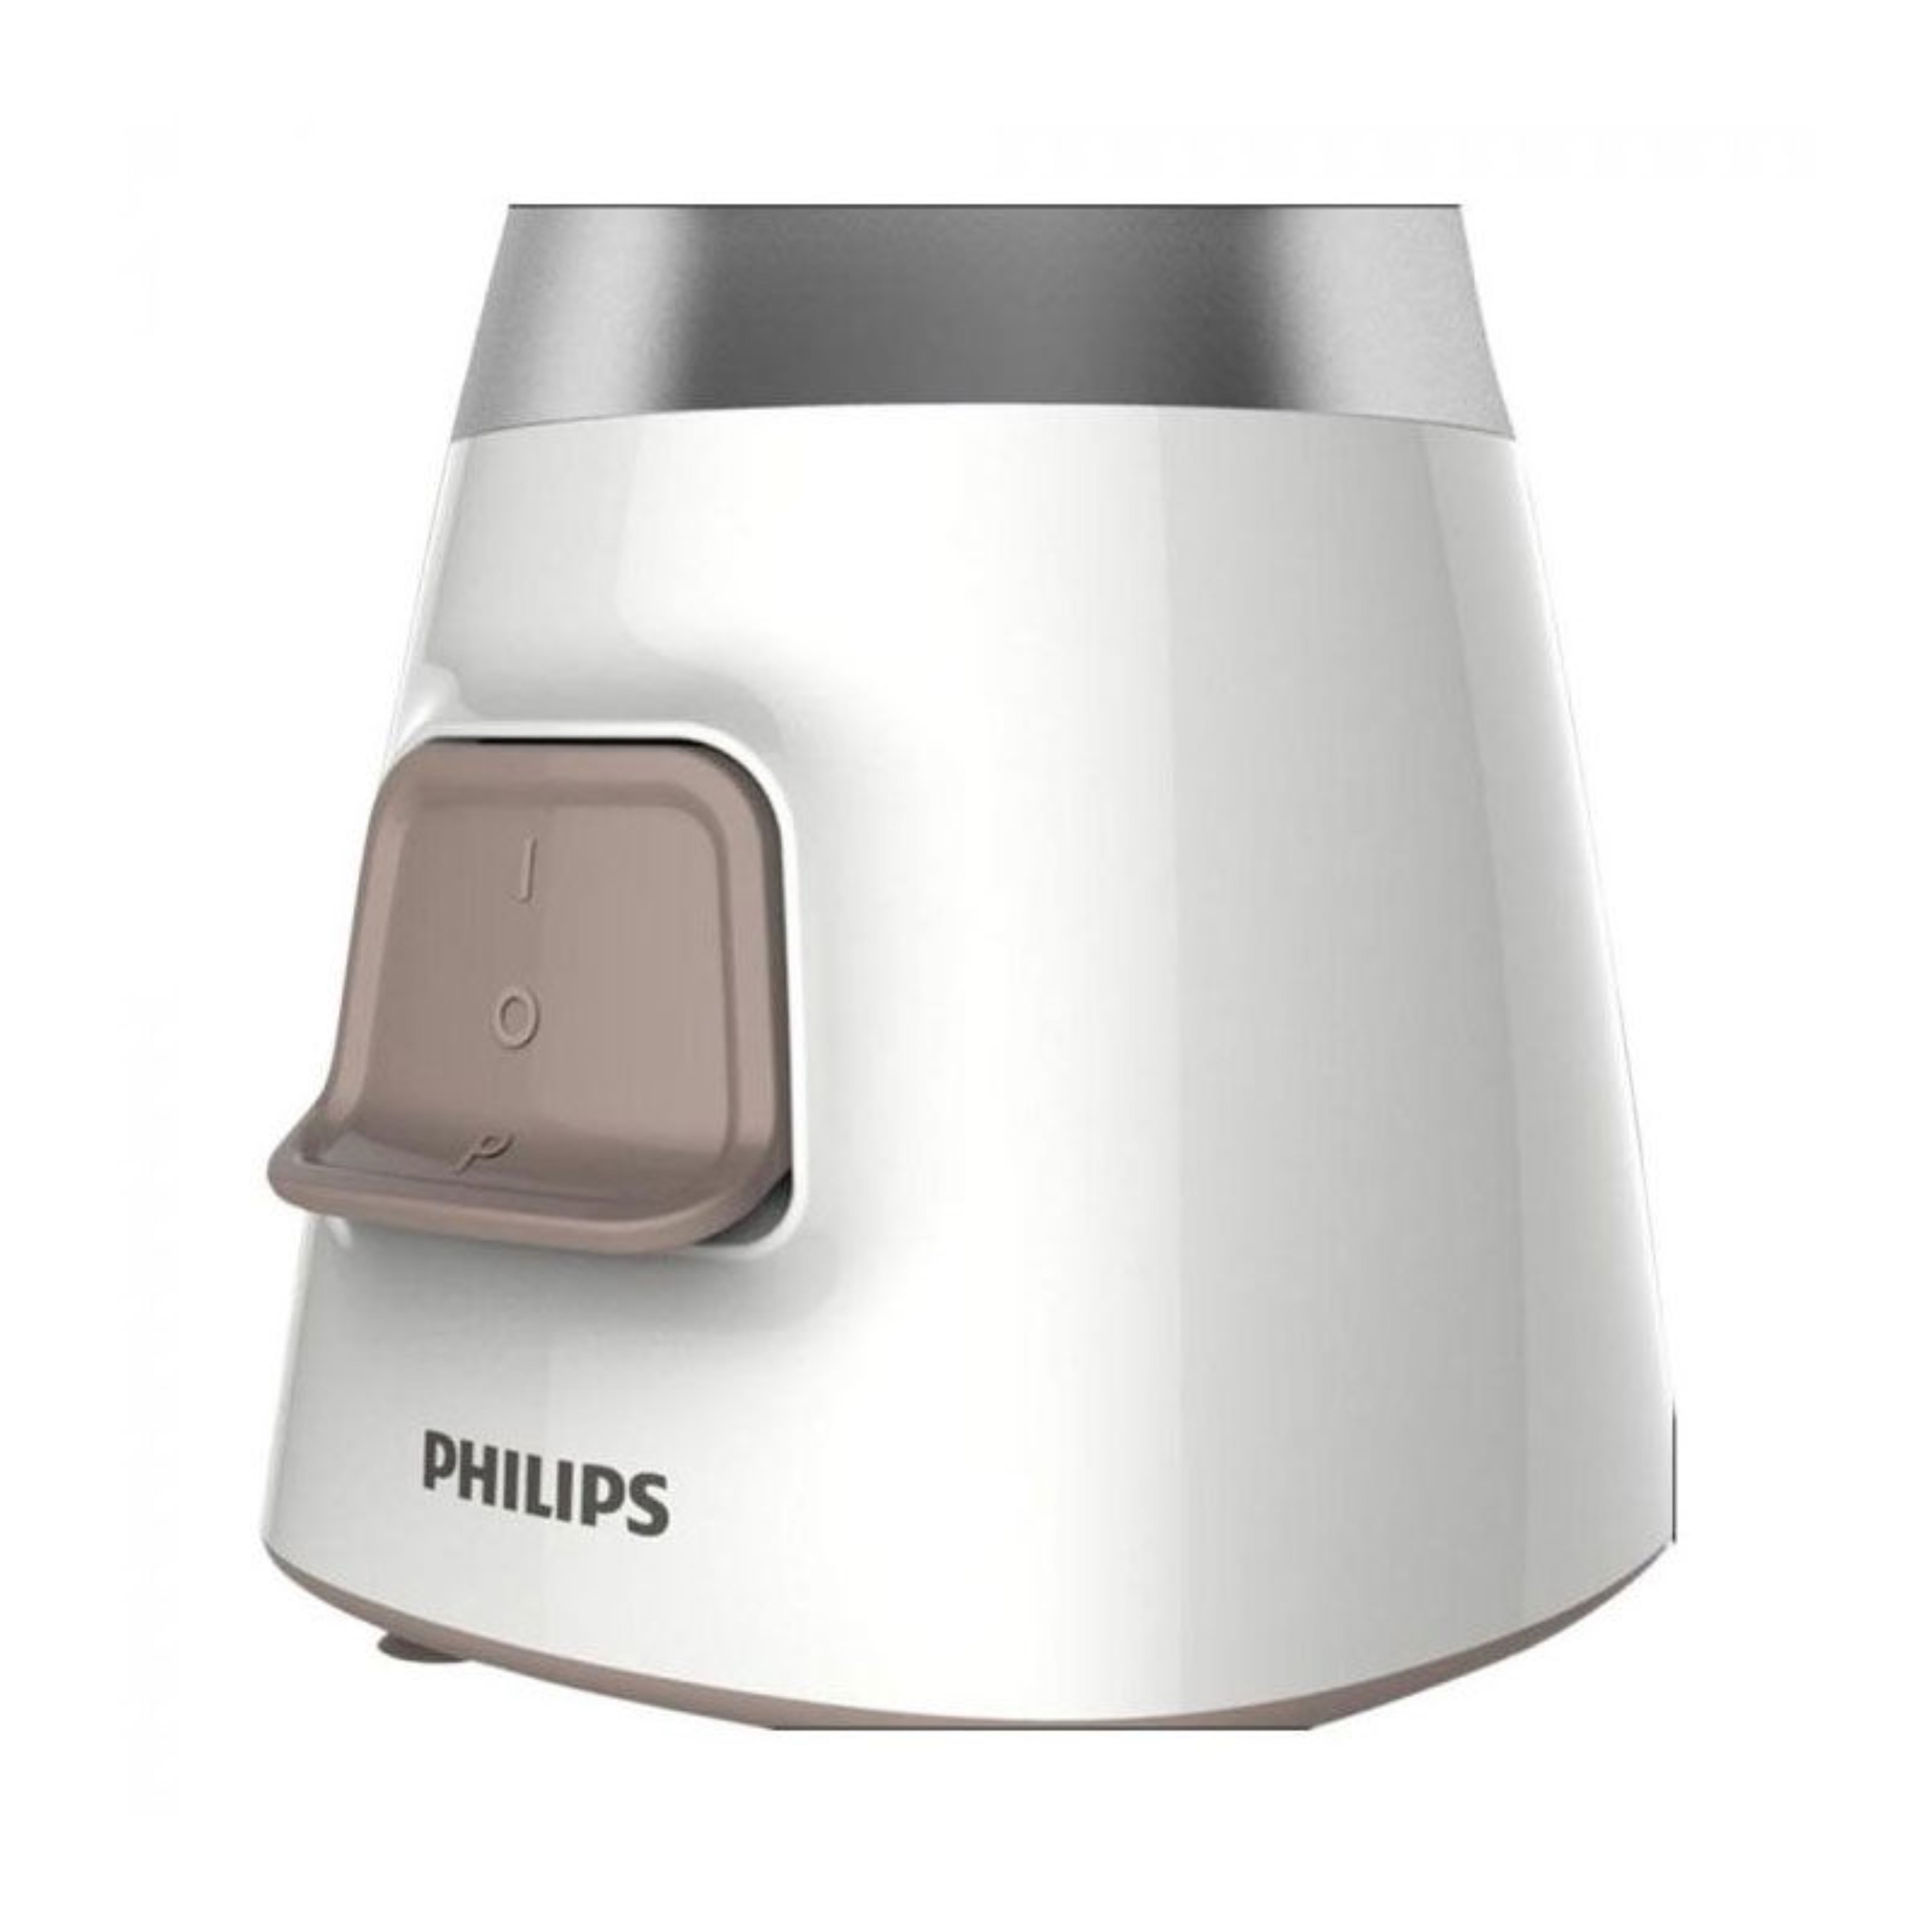 Philips HR2056/00 Blender